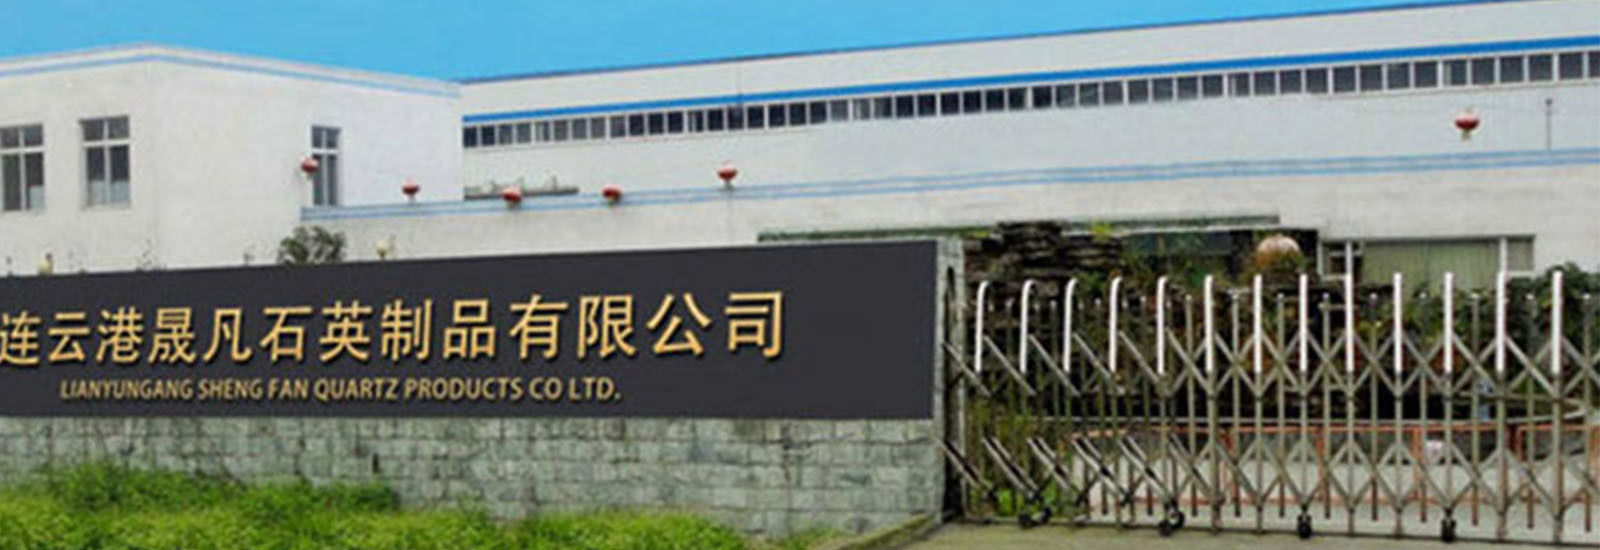 Çin Lianyungang Shengfan Quartz Product Co., Ltd şirket Profili